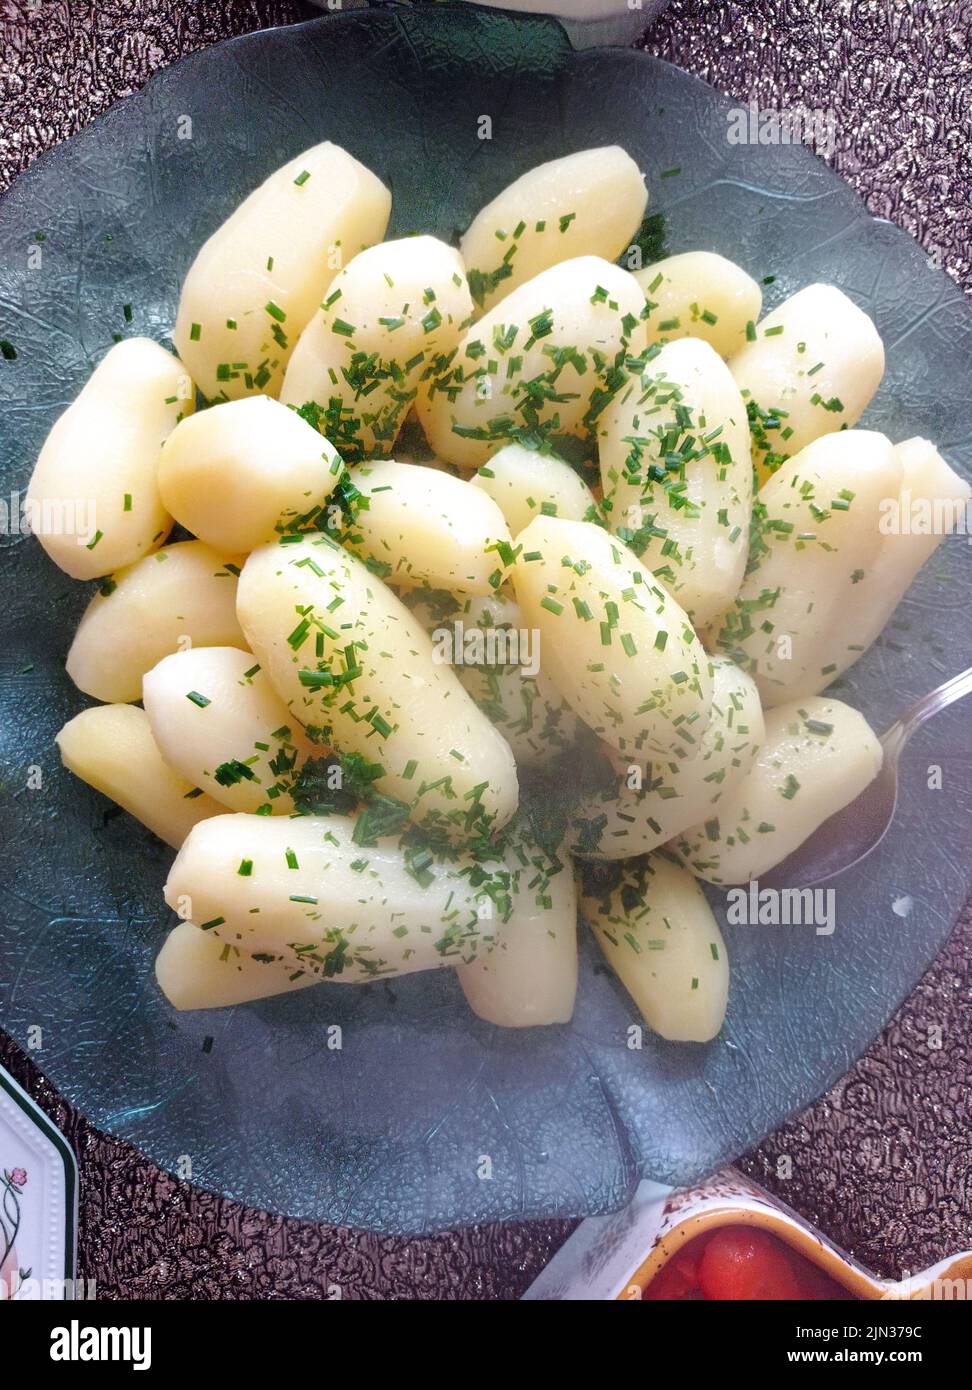 Pommes de terre saupoudrées de persil finement hachés, France Stock Photo